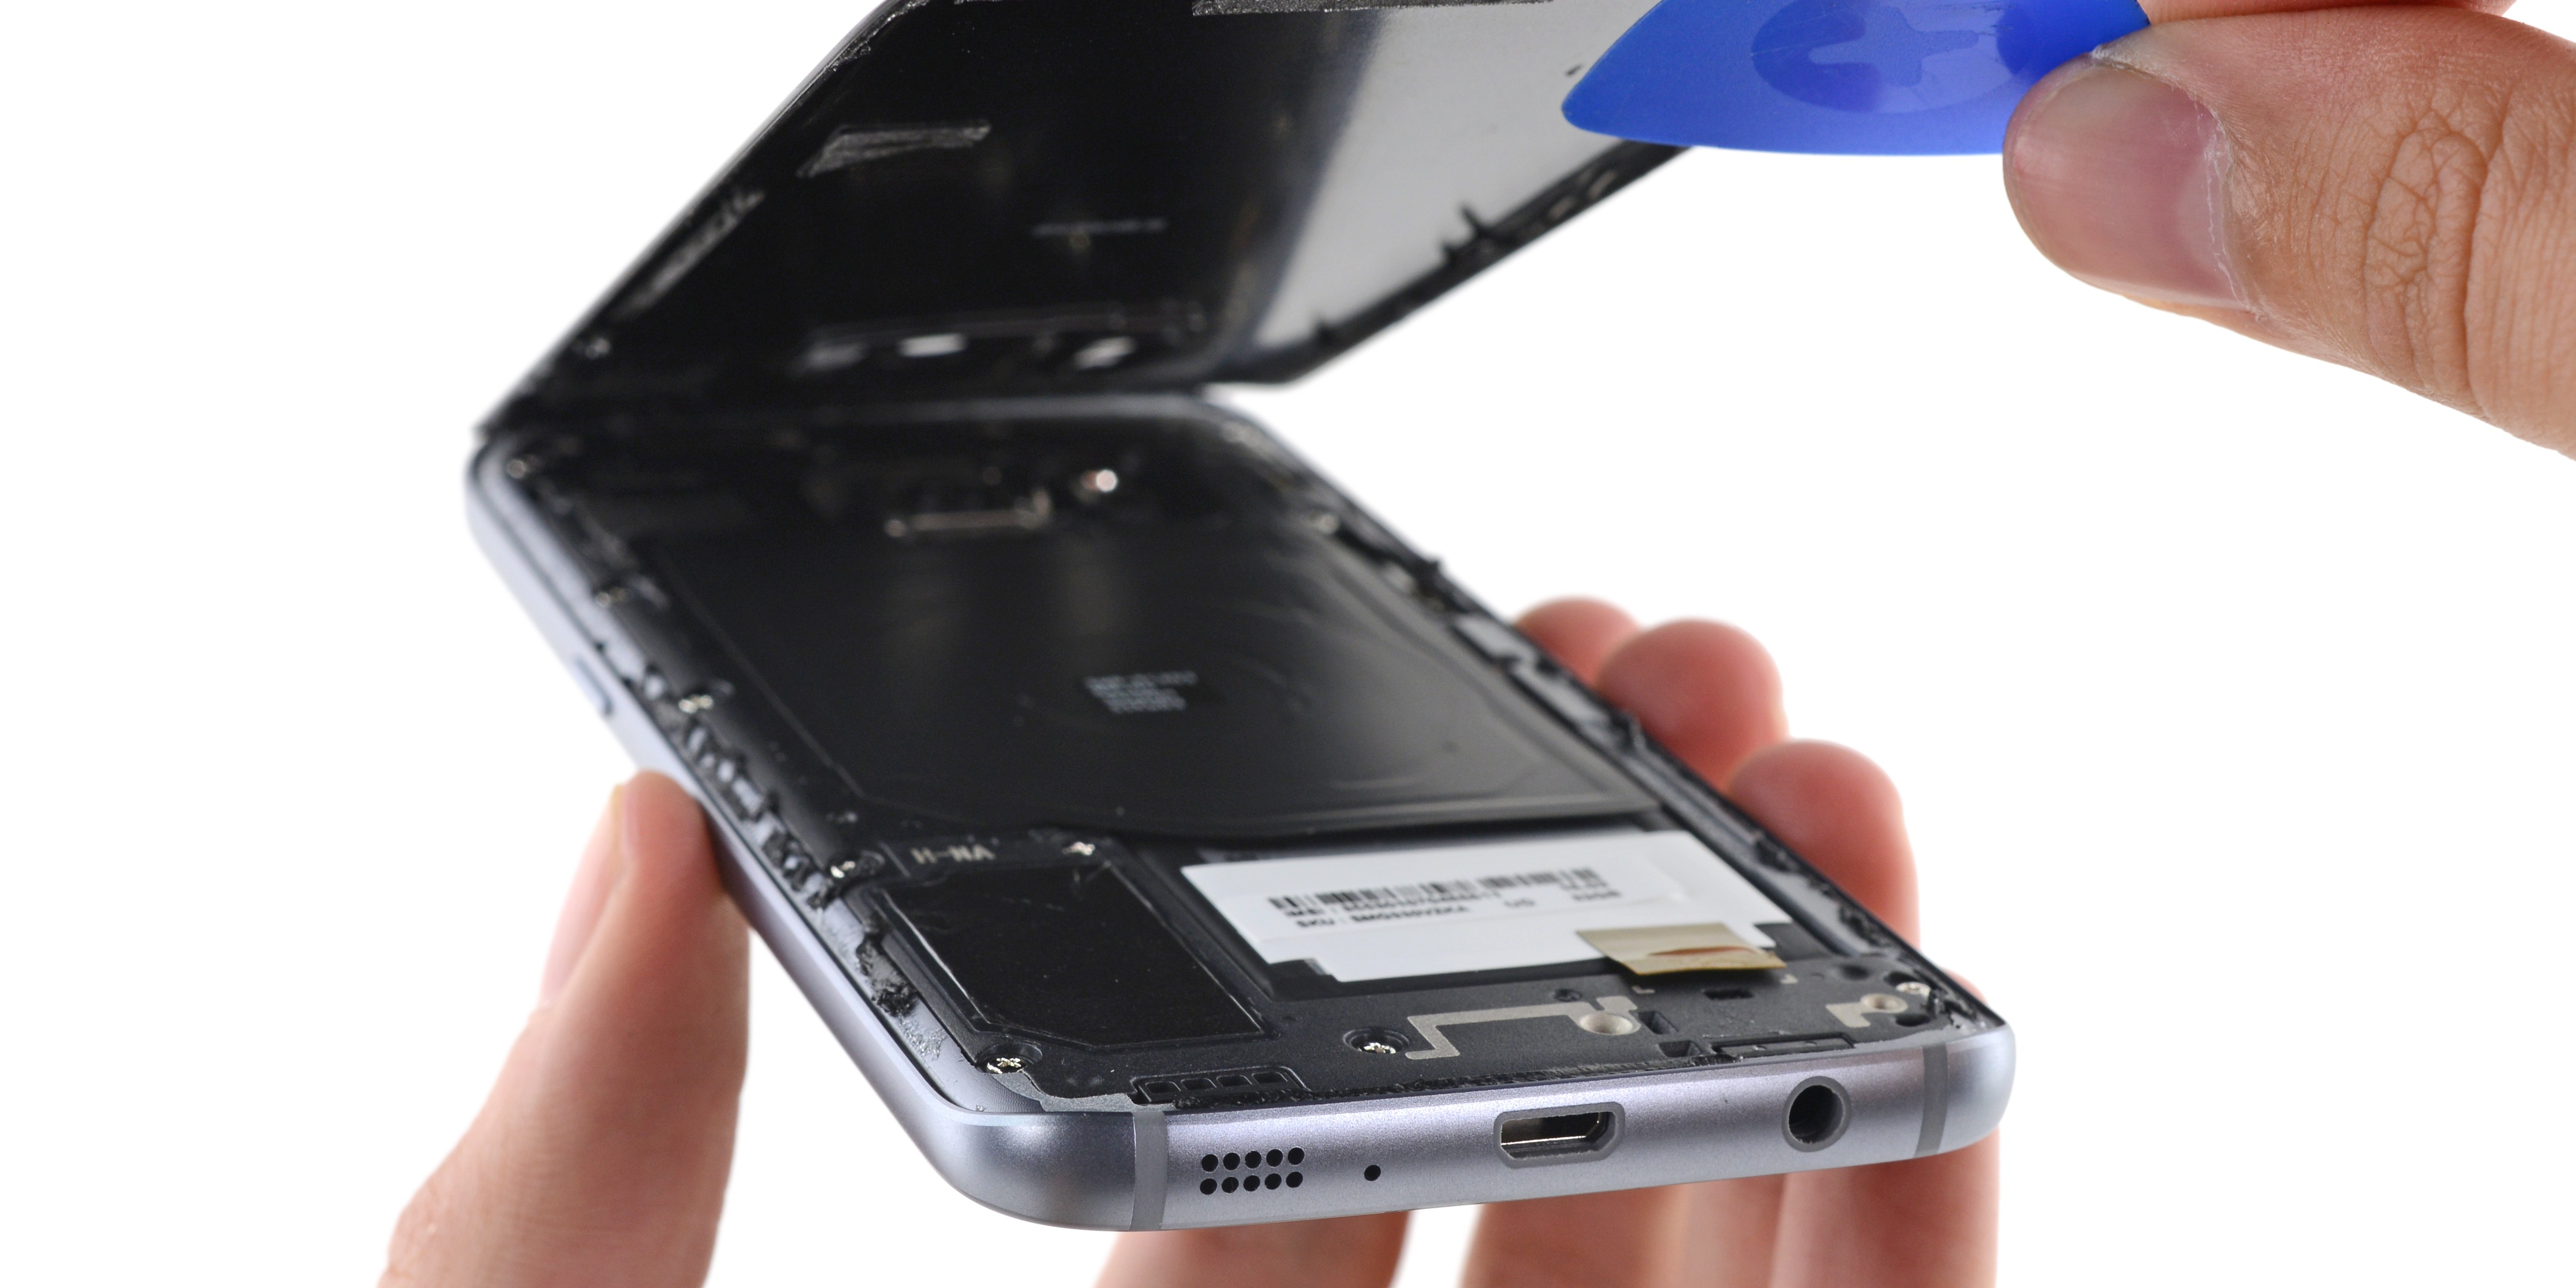 Замена Динамика Samsung S8 Plus